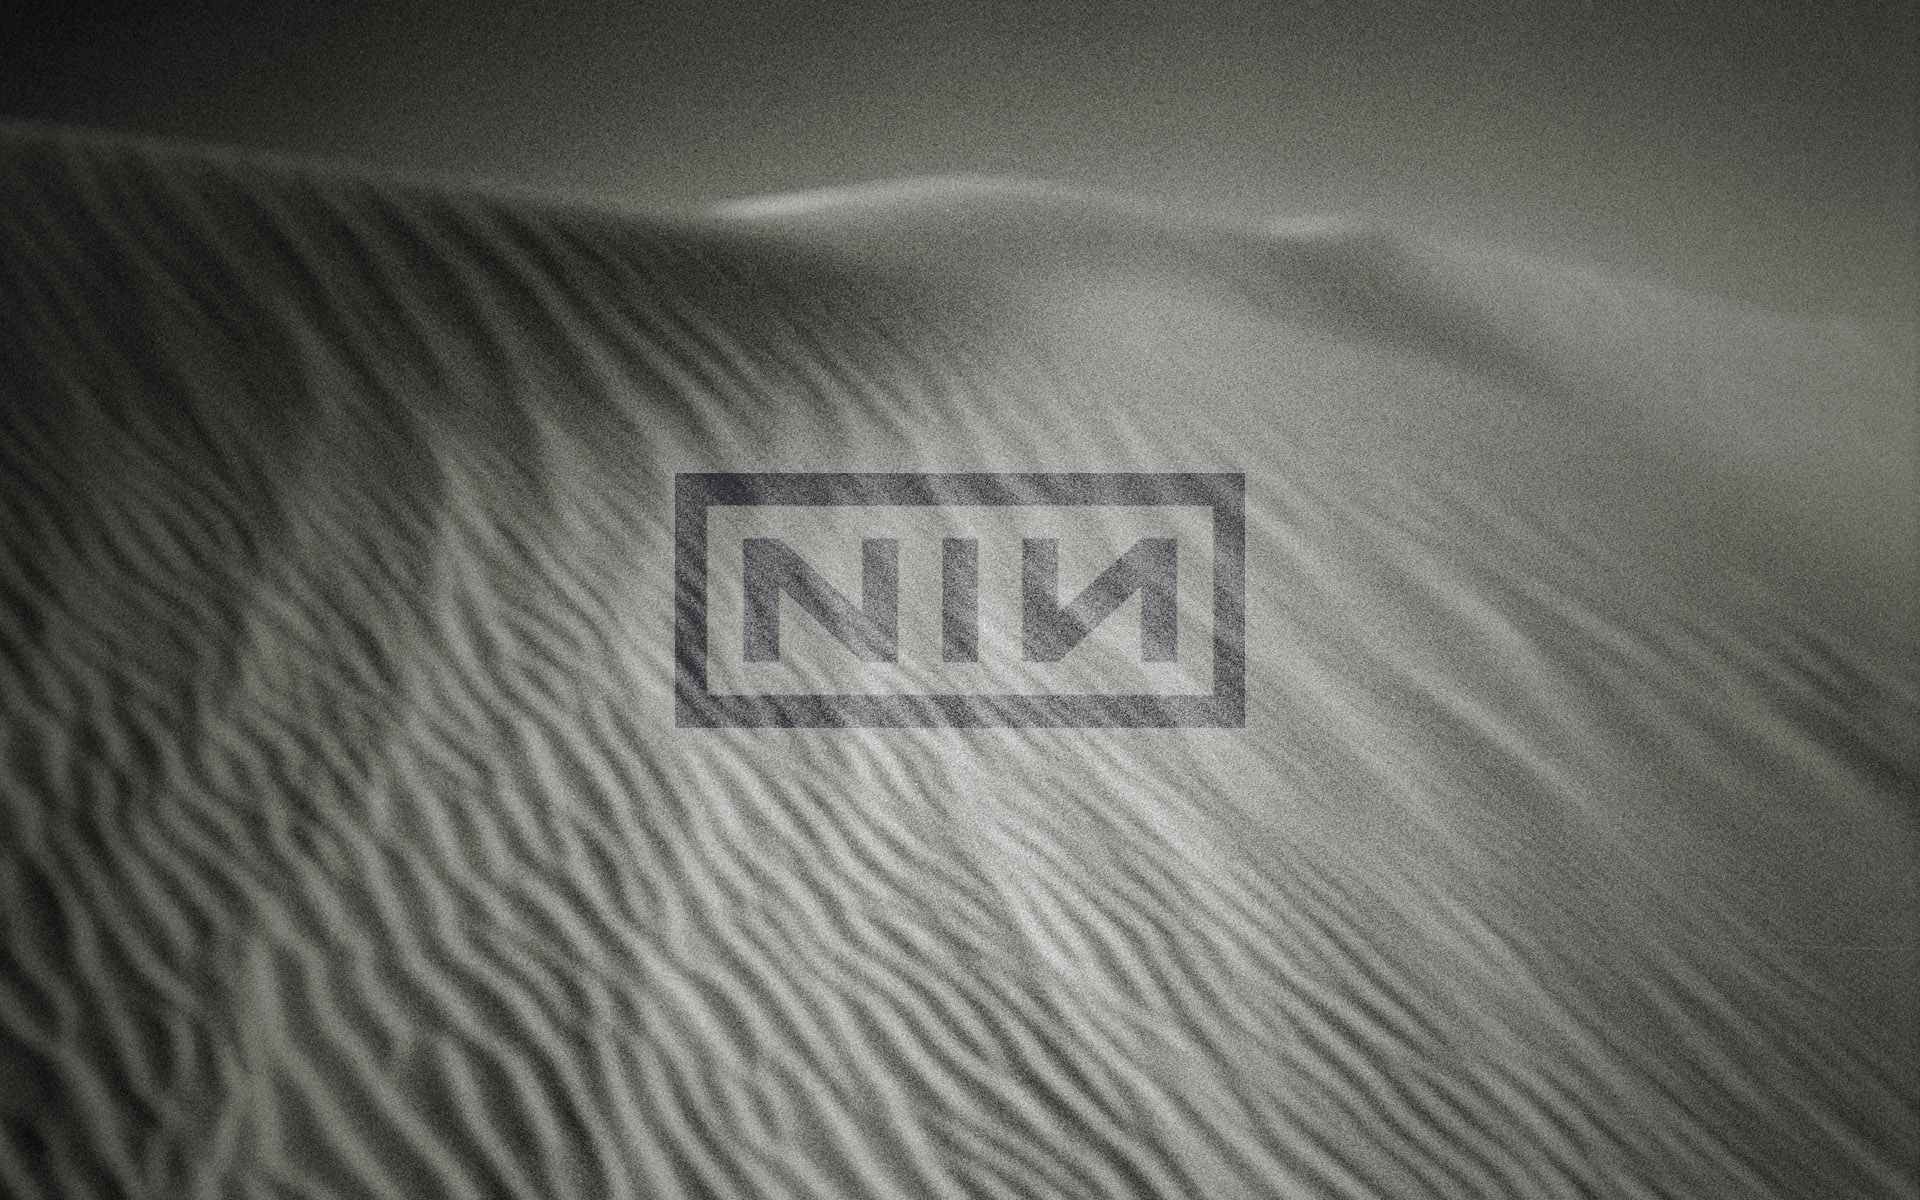 Nine Inch Nails, пустыня, оттенки серого, монохромный - обои на рабочий стол